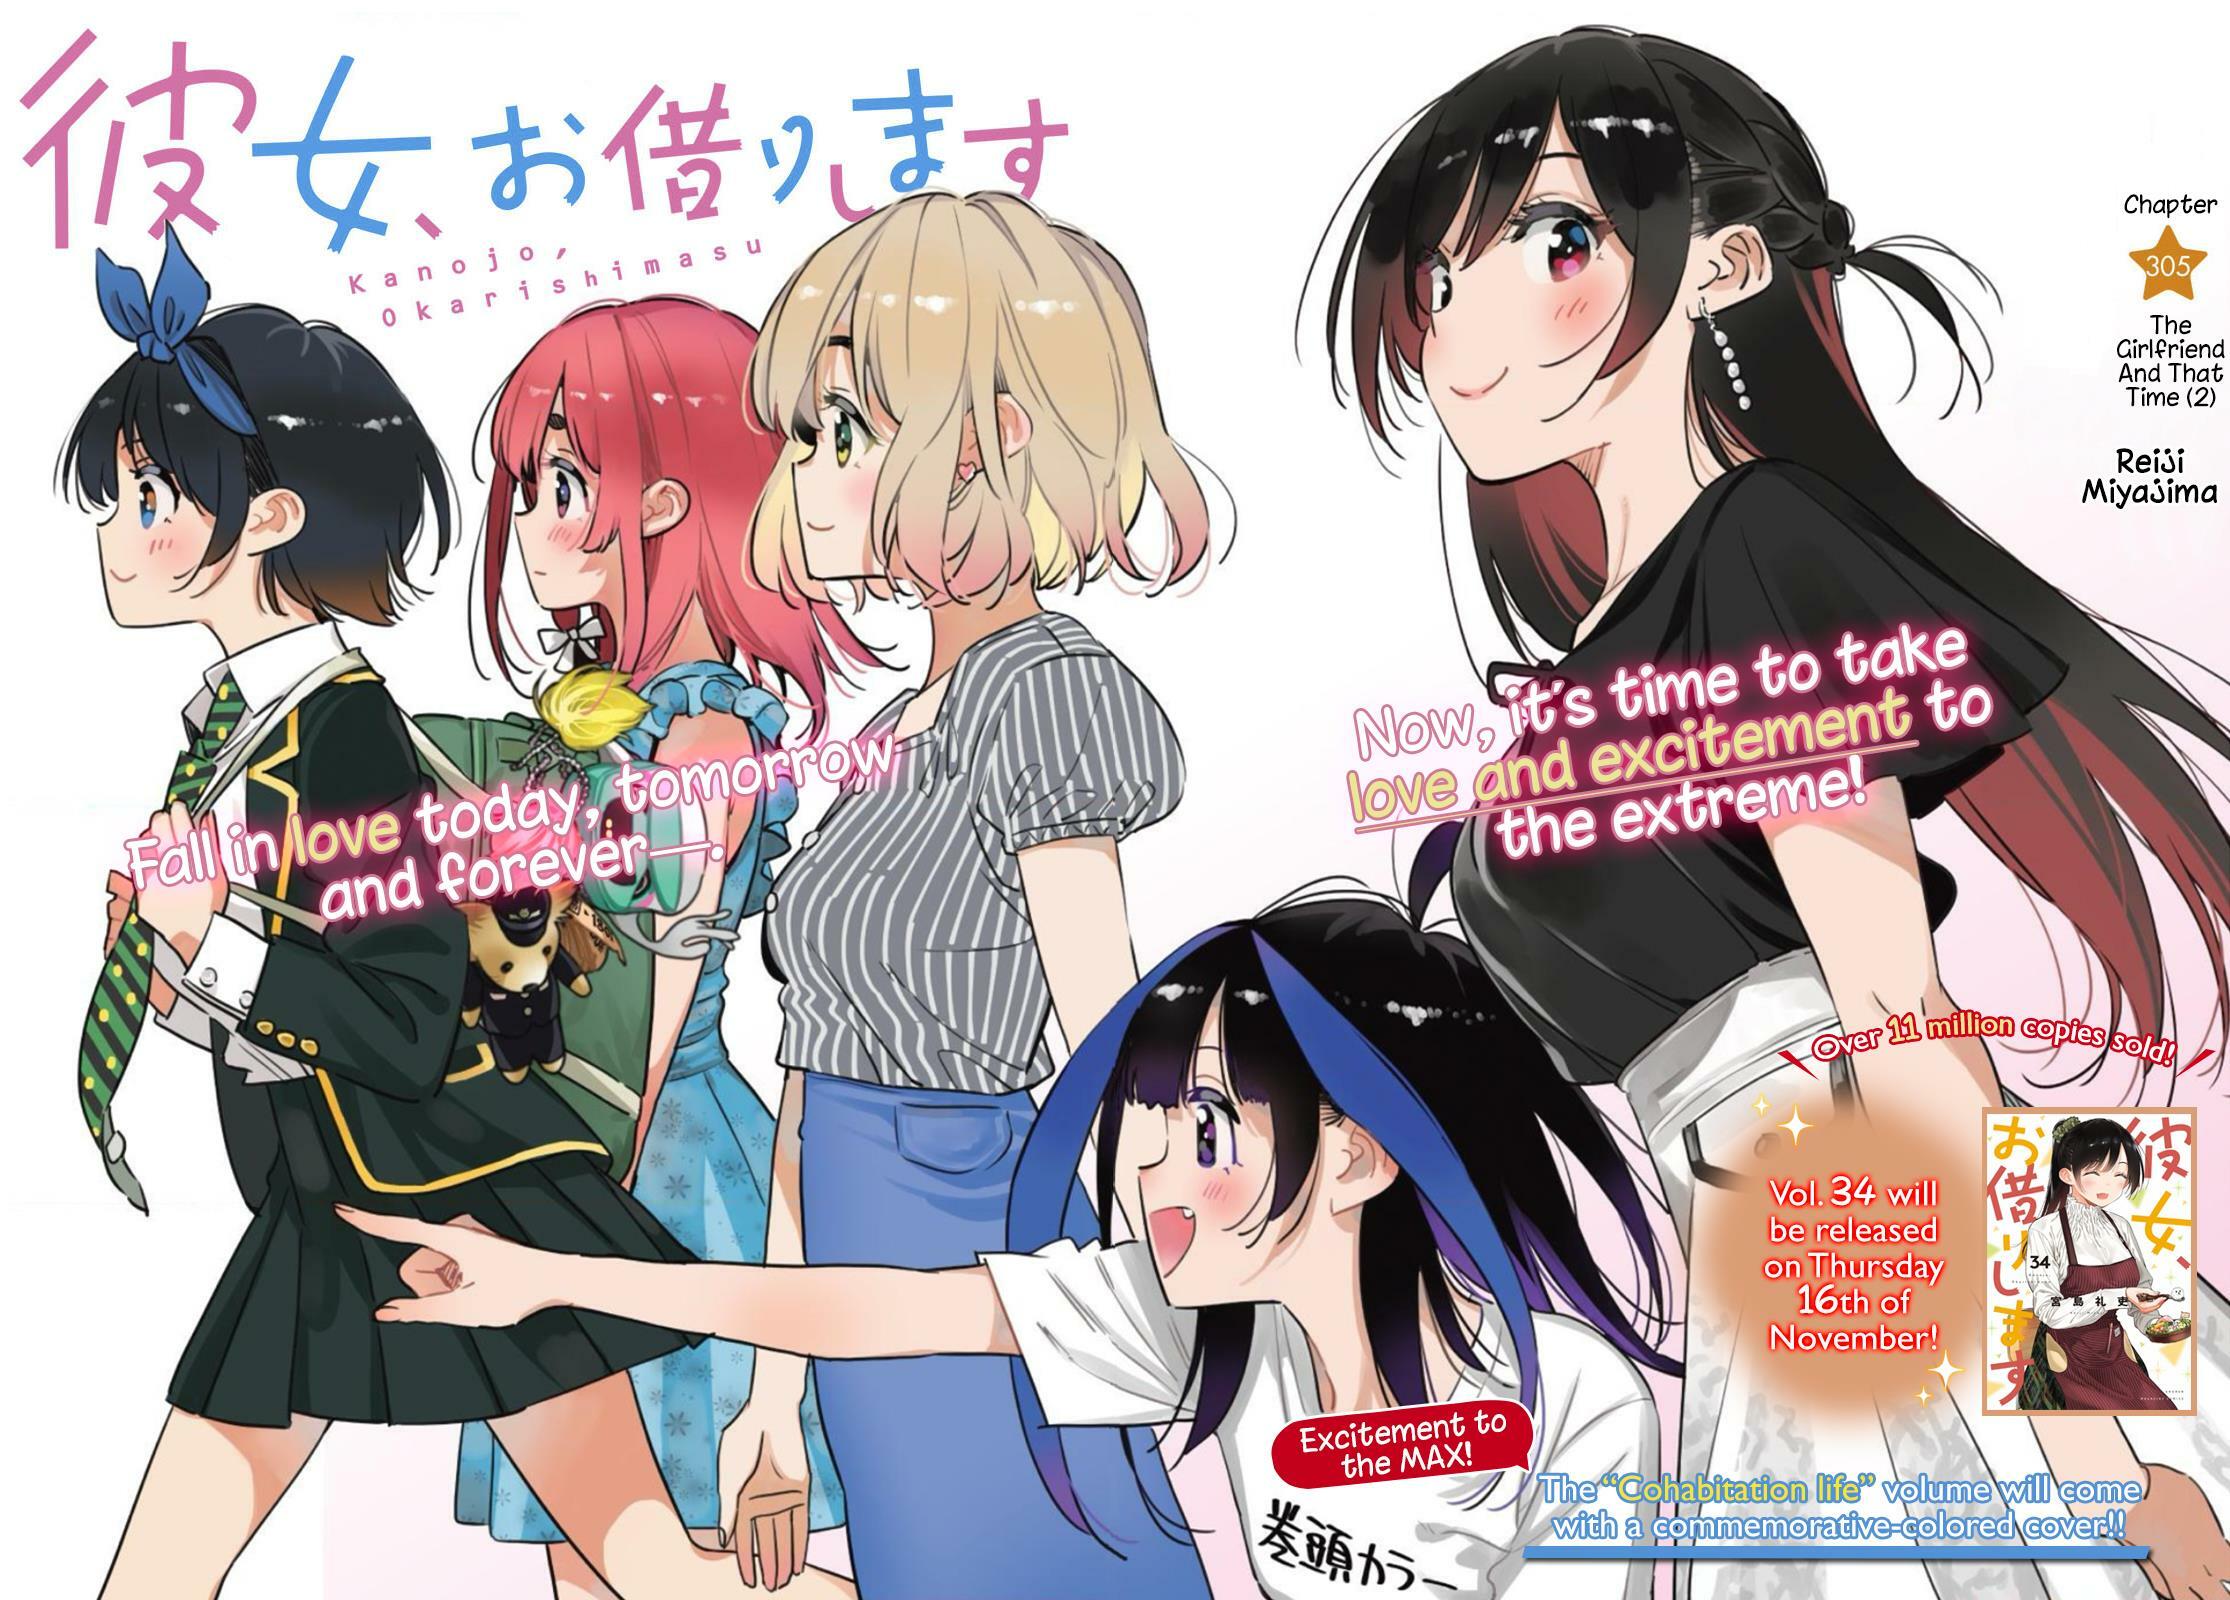 Should you read Rent-A-Girlfriend (Kanojo, Okarishimasu)?